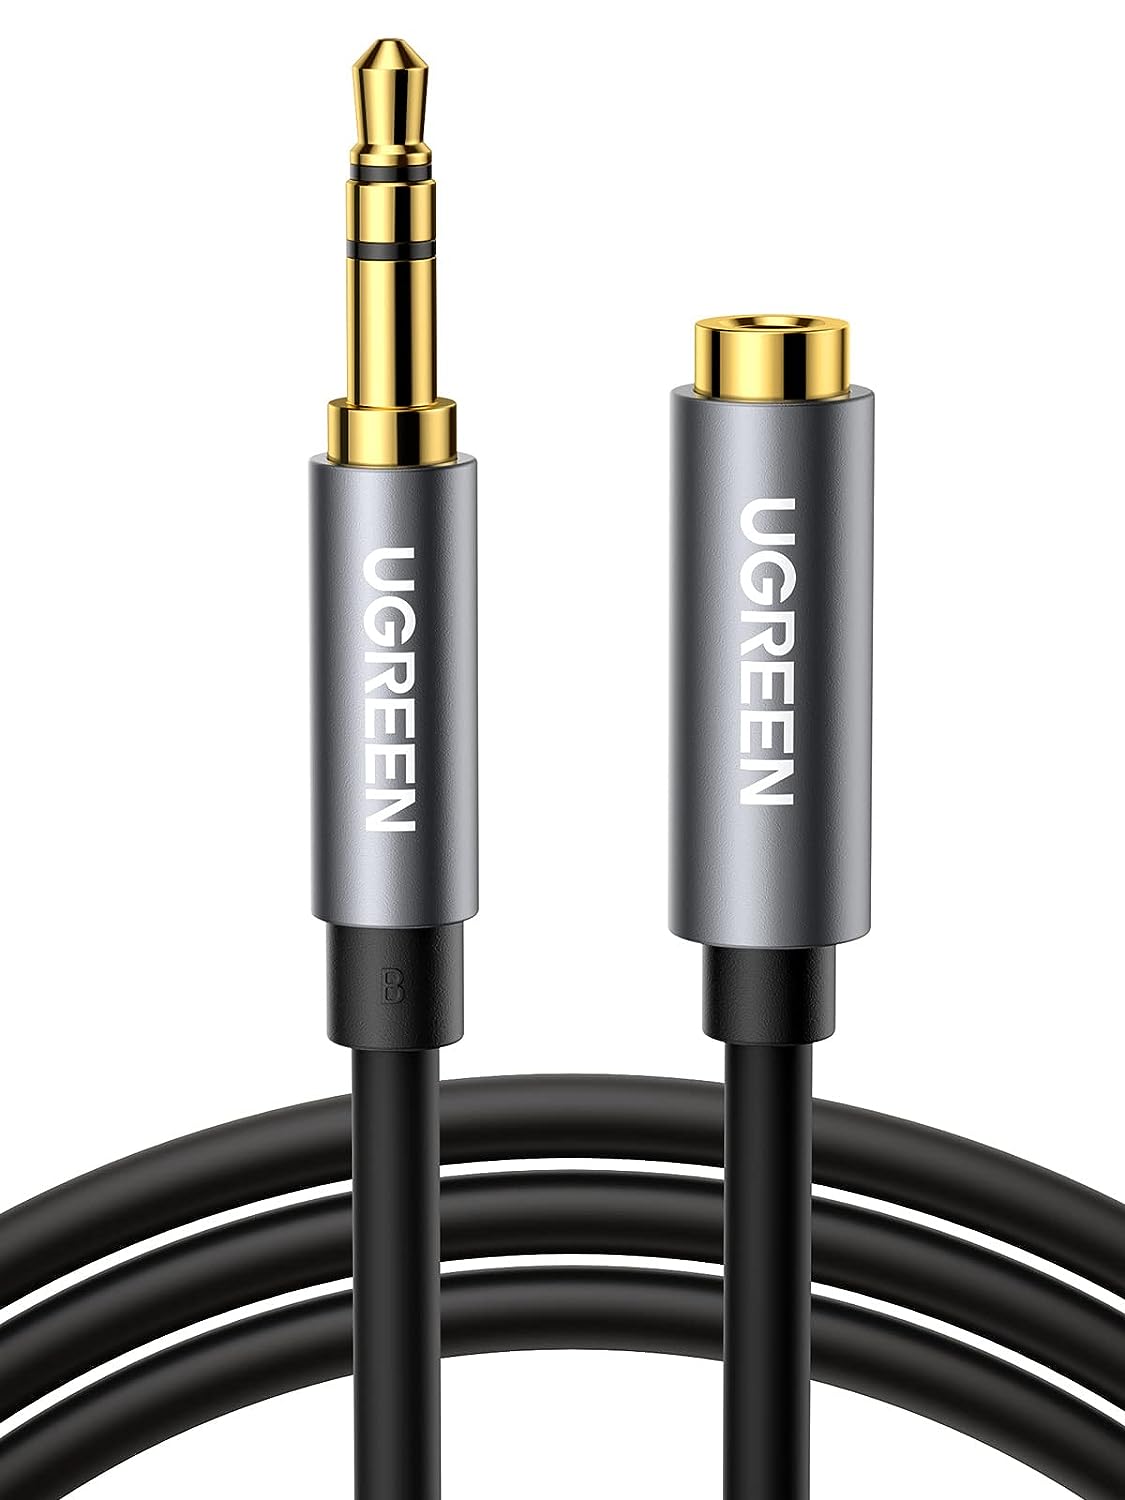 10594 Аудио кабель 3,5мм - 3,5мм UGREEN AV118, цвет - черный, длина 2м.